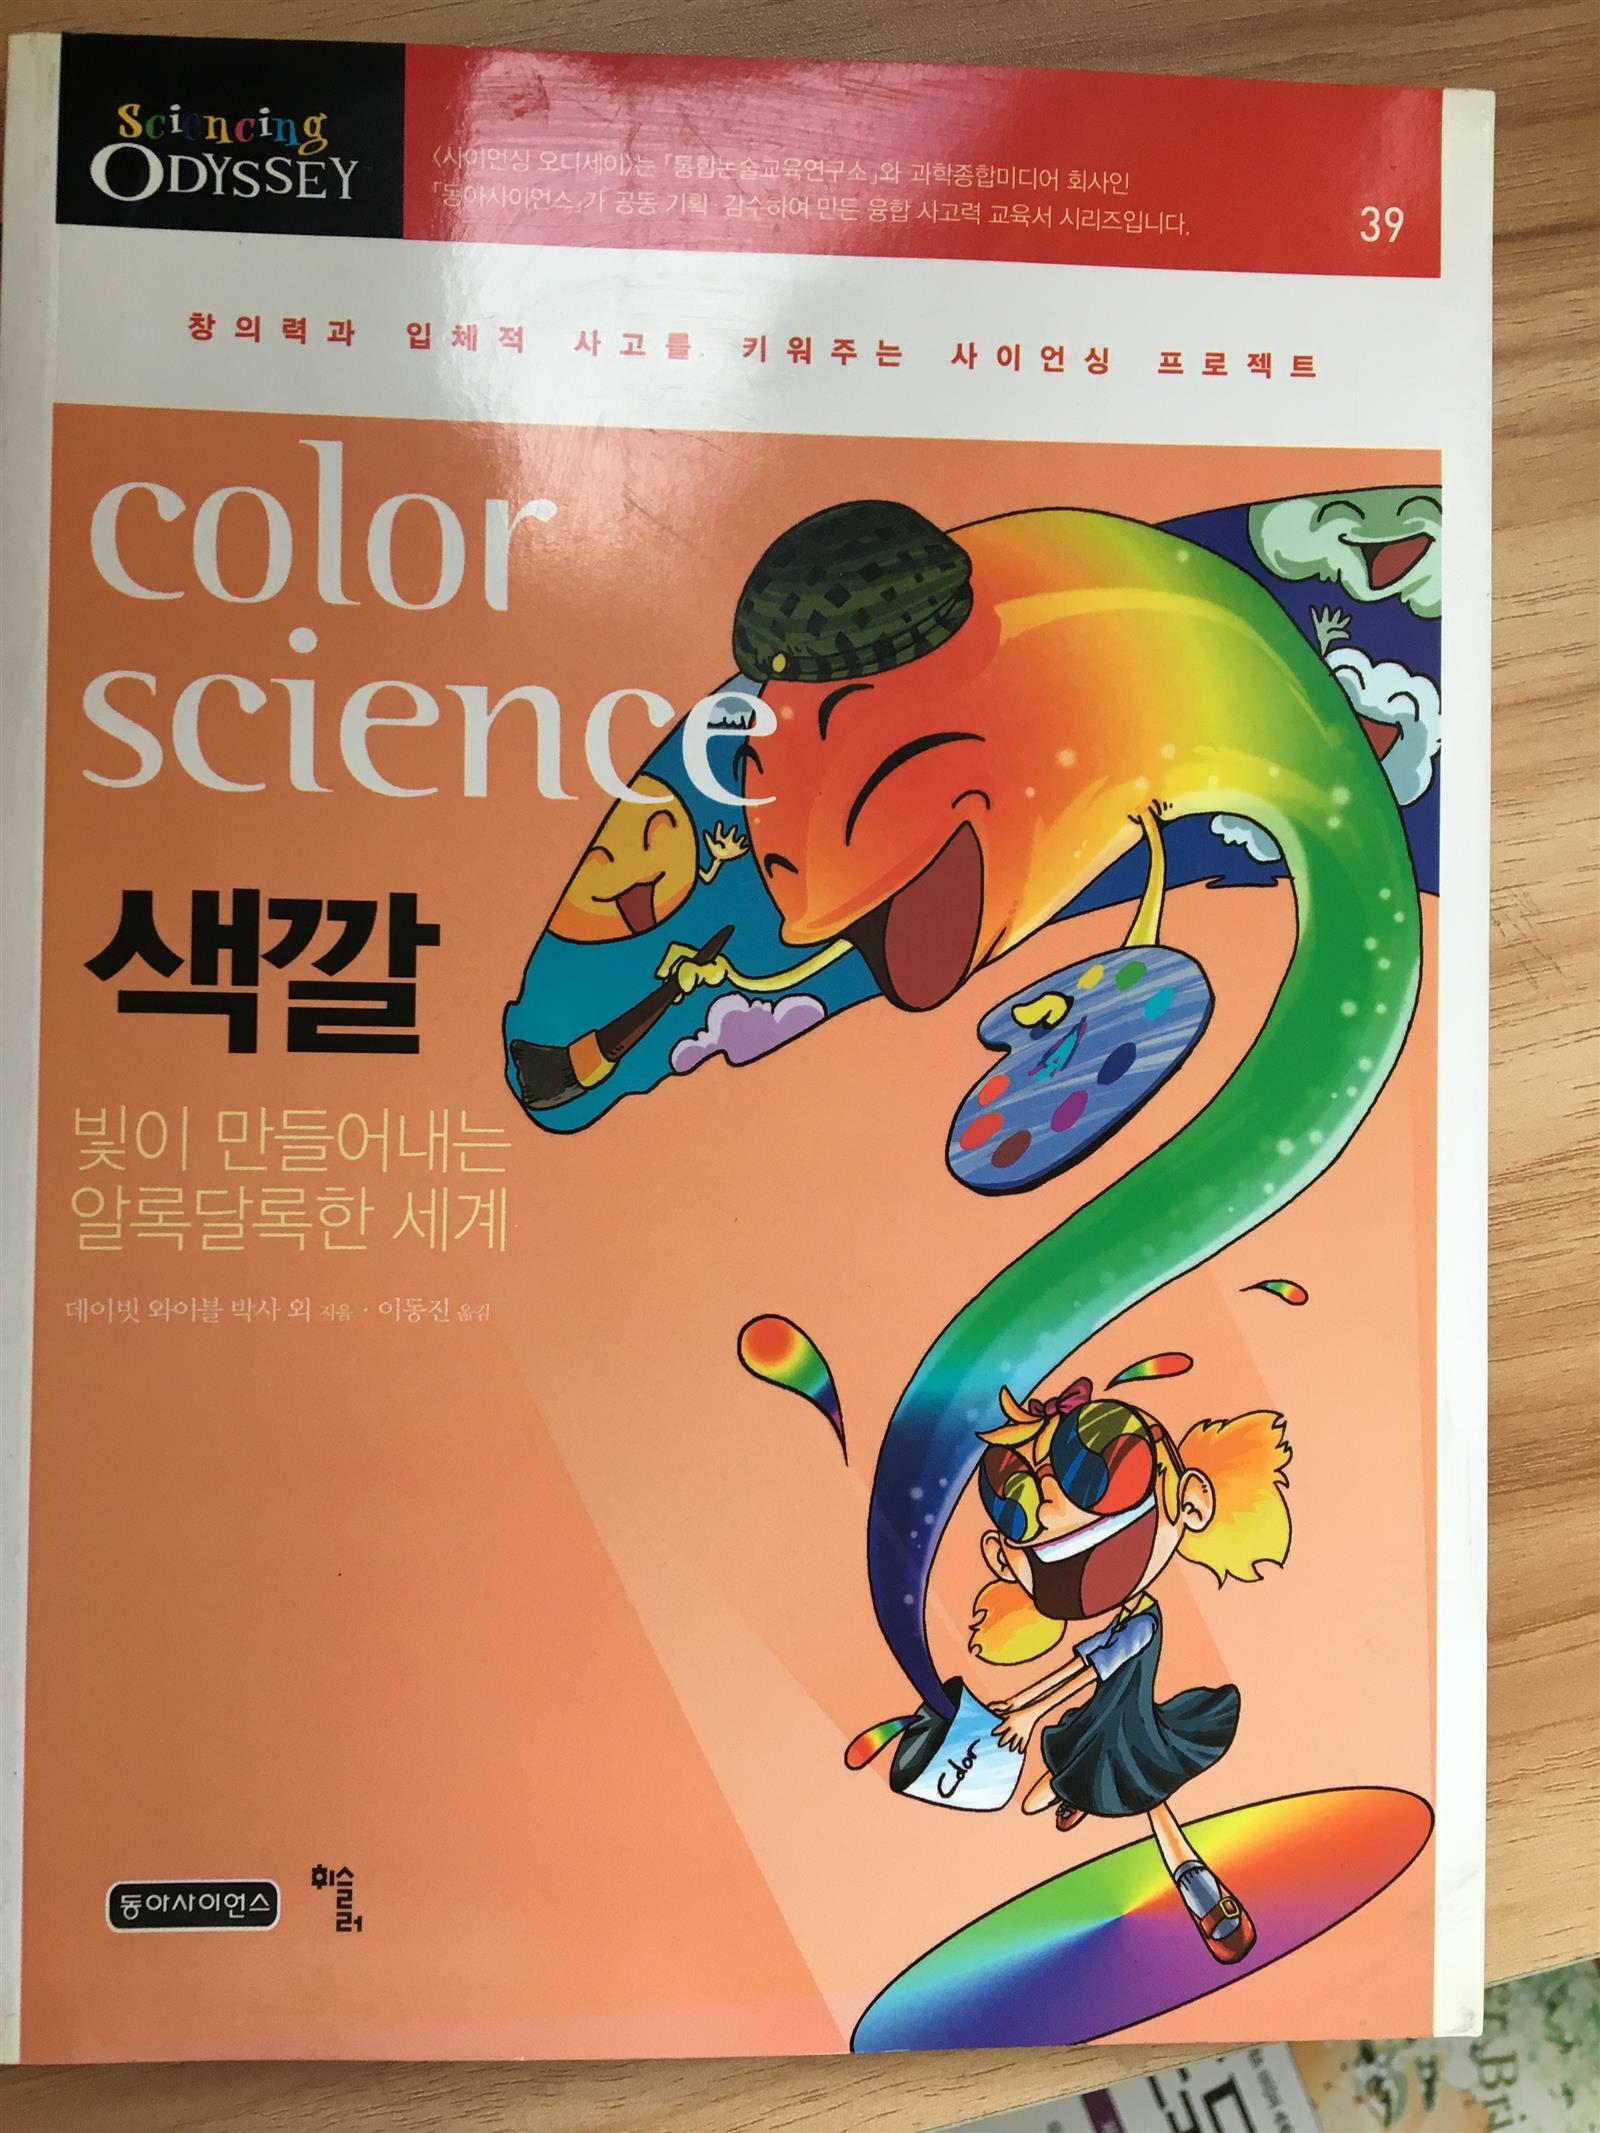 색깔, color science - sciencing odyssey 39